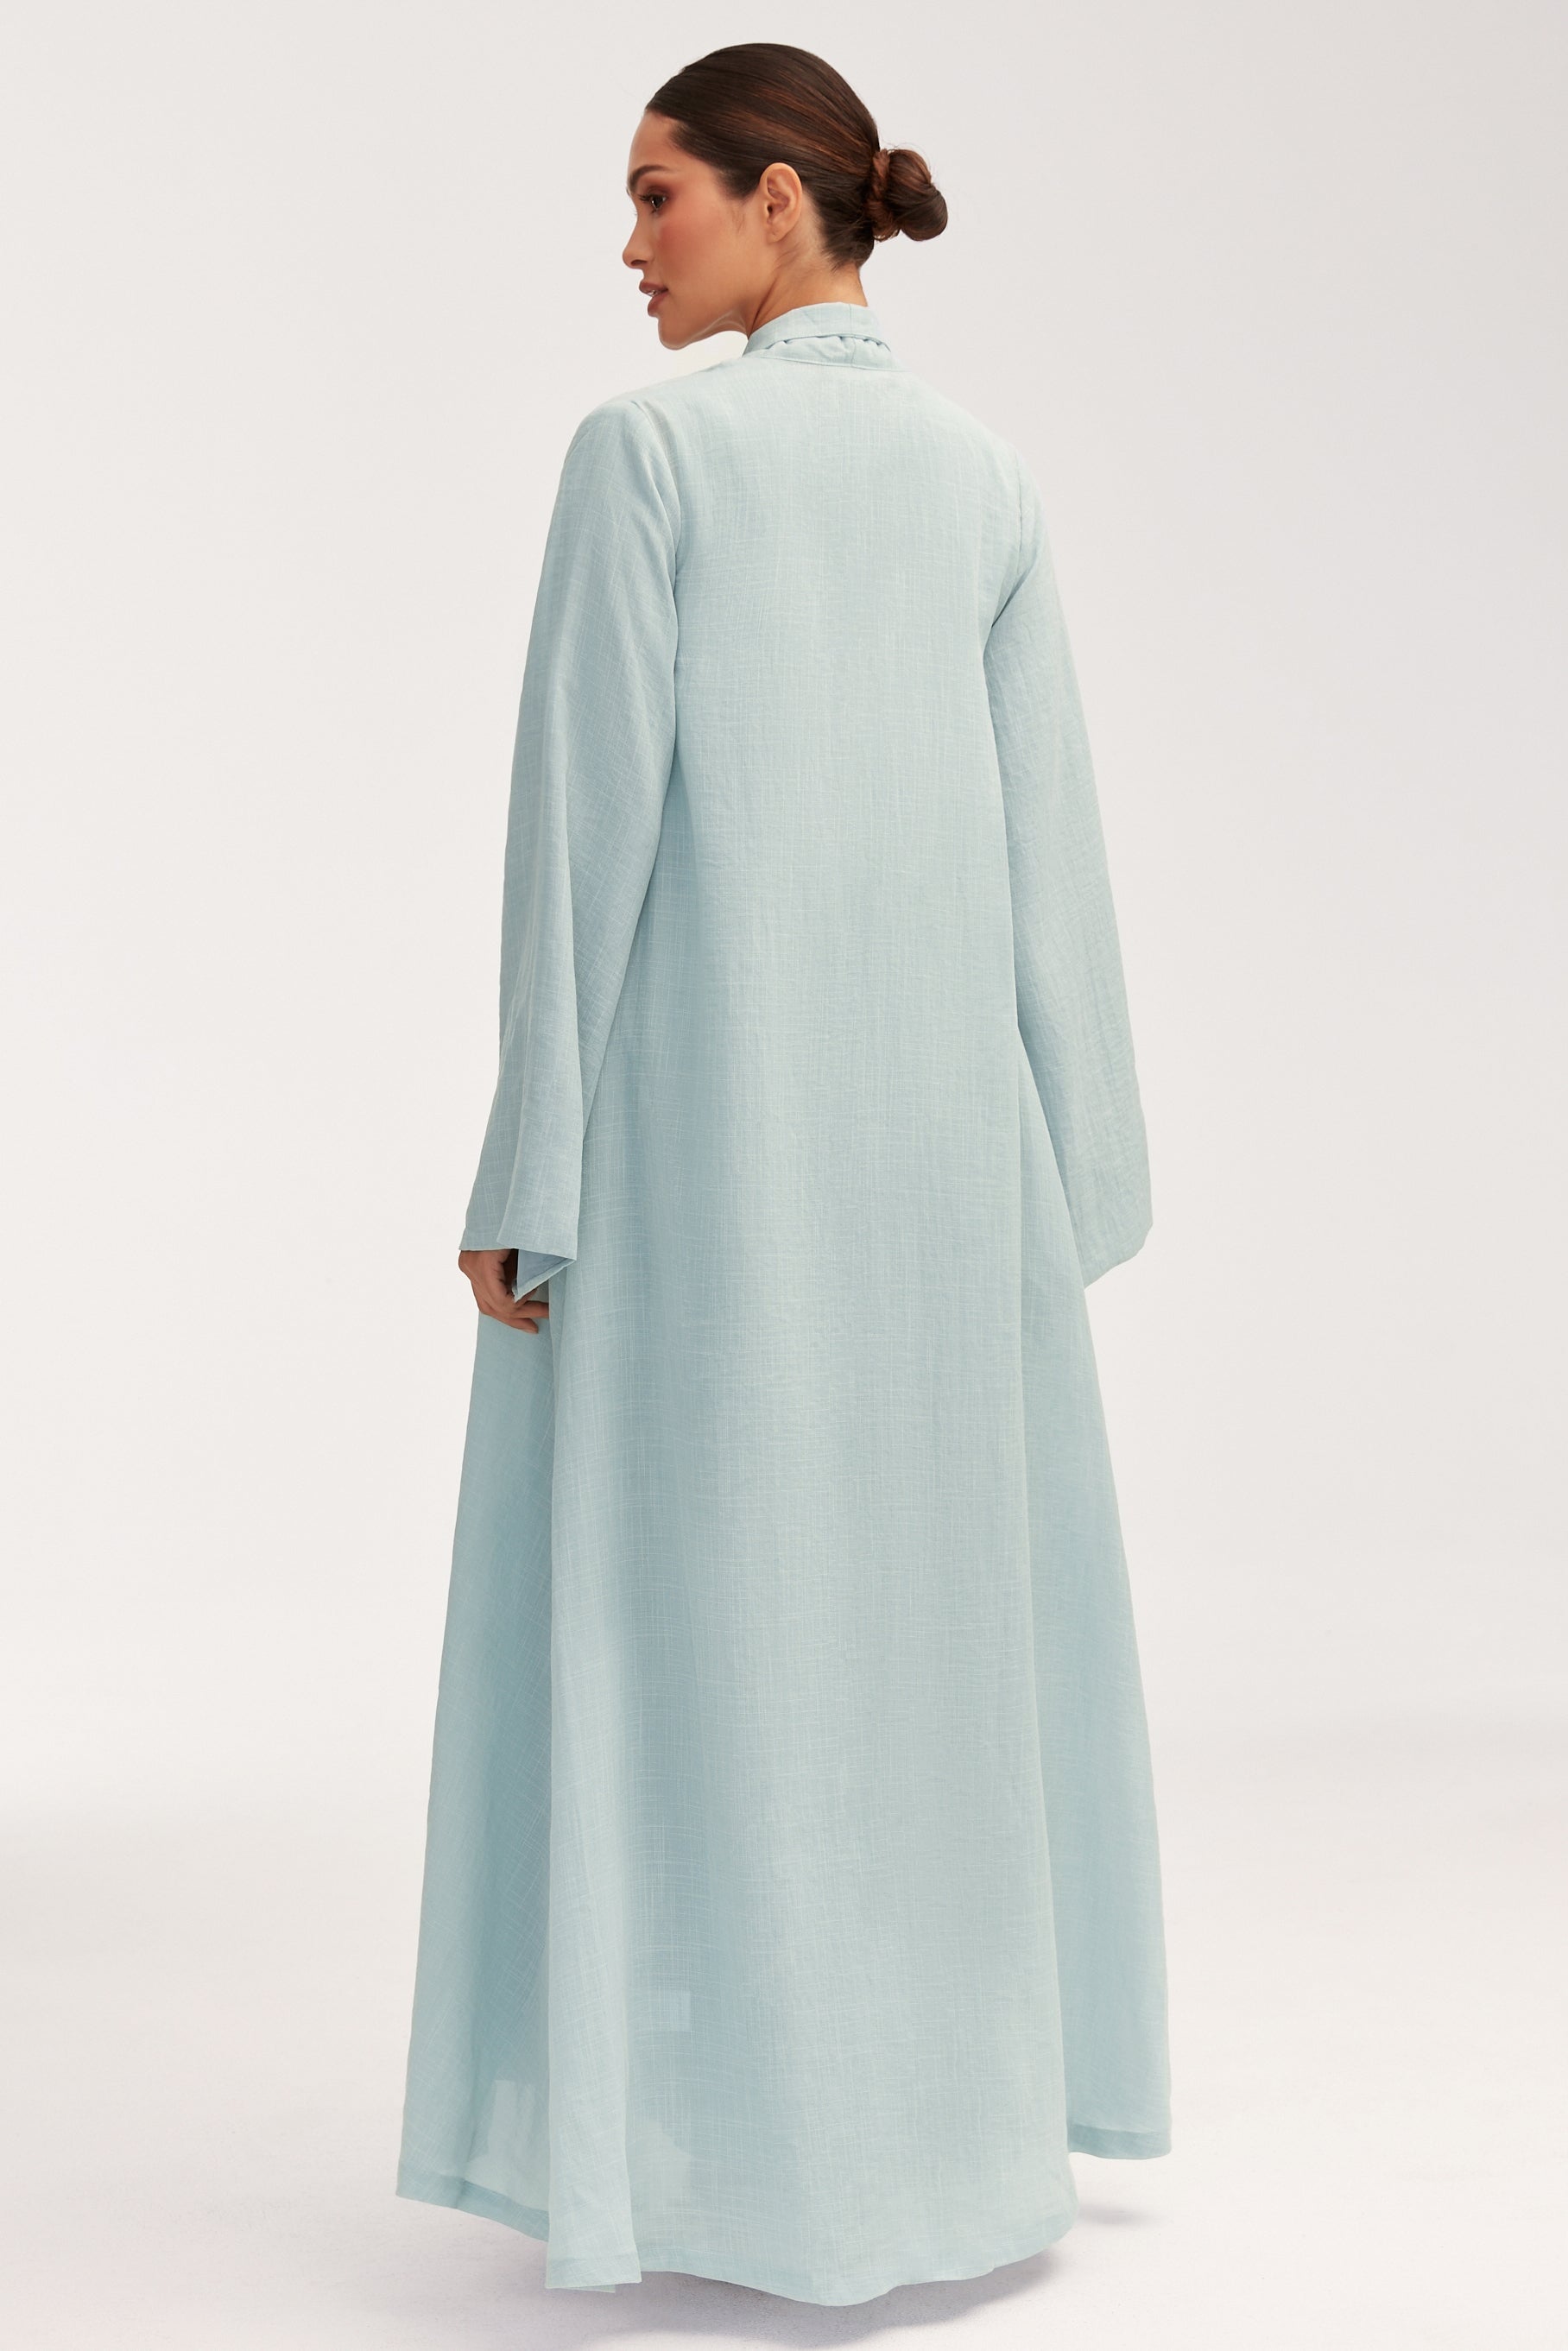 Azka Tie Front Abaya - Cucumber Clothing Veiled 